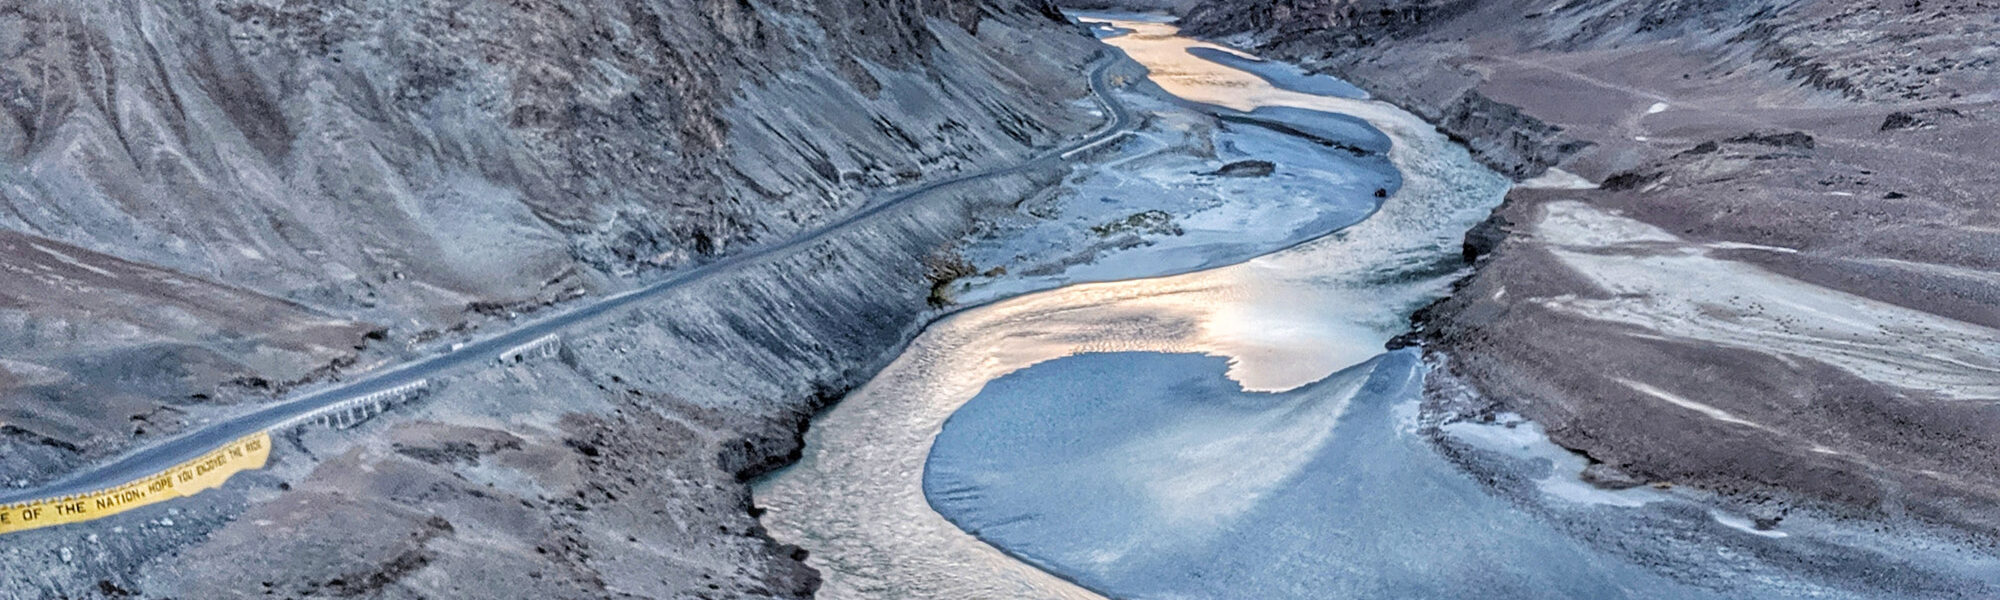 Op mijn wishlist: Chadartrekking over de bevroren Zanskar